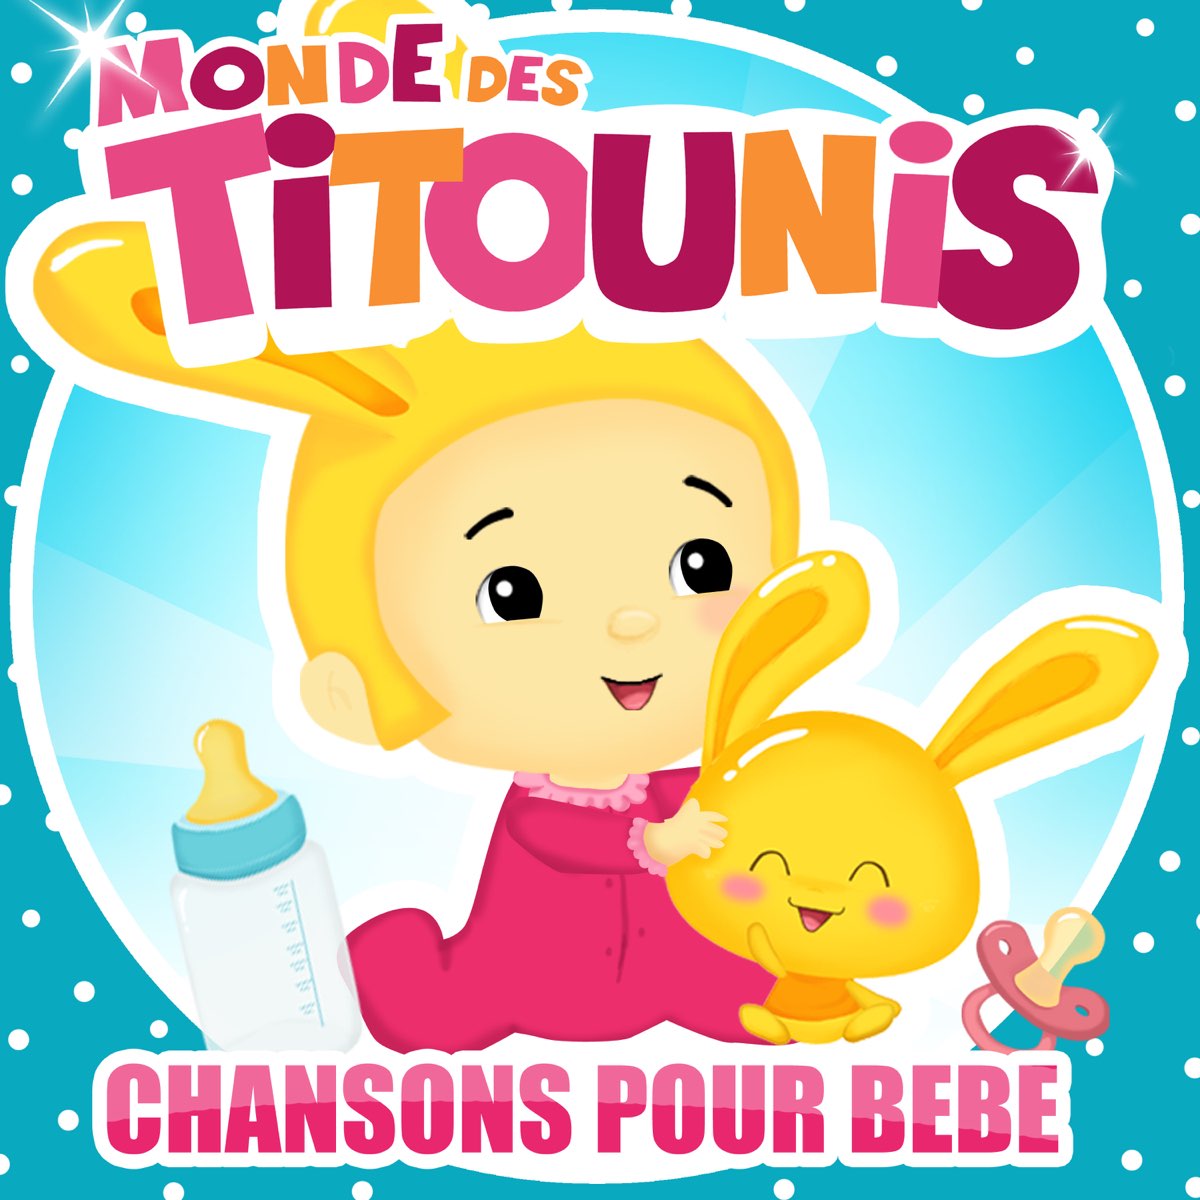 Chanson pour bébé - Album by Monde des Titounis - Apple Music